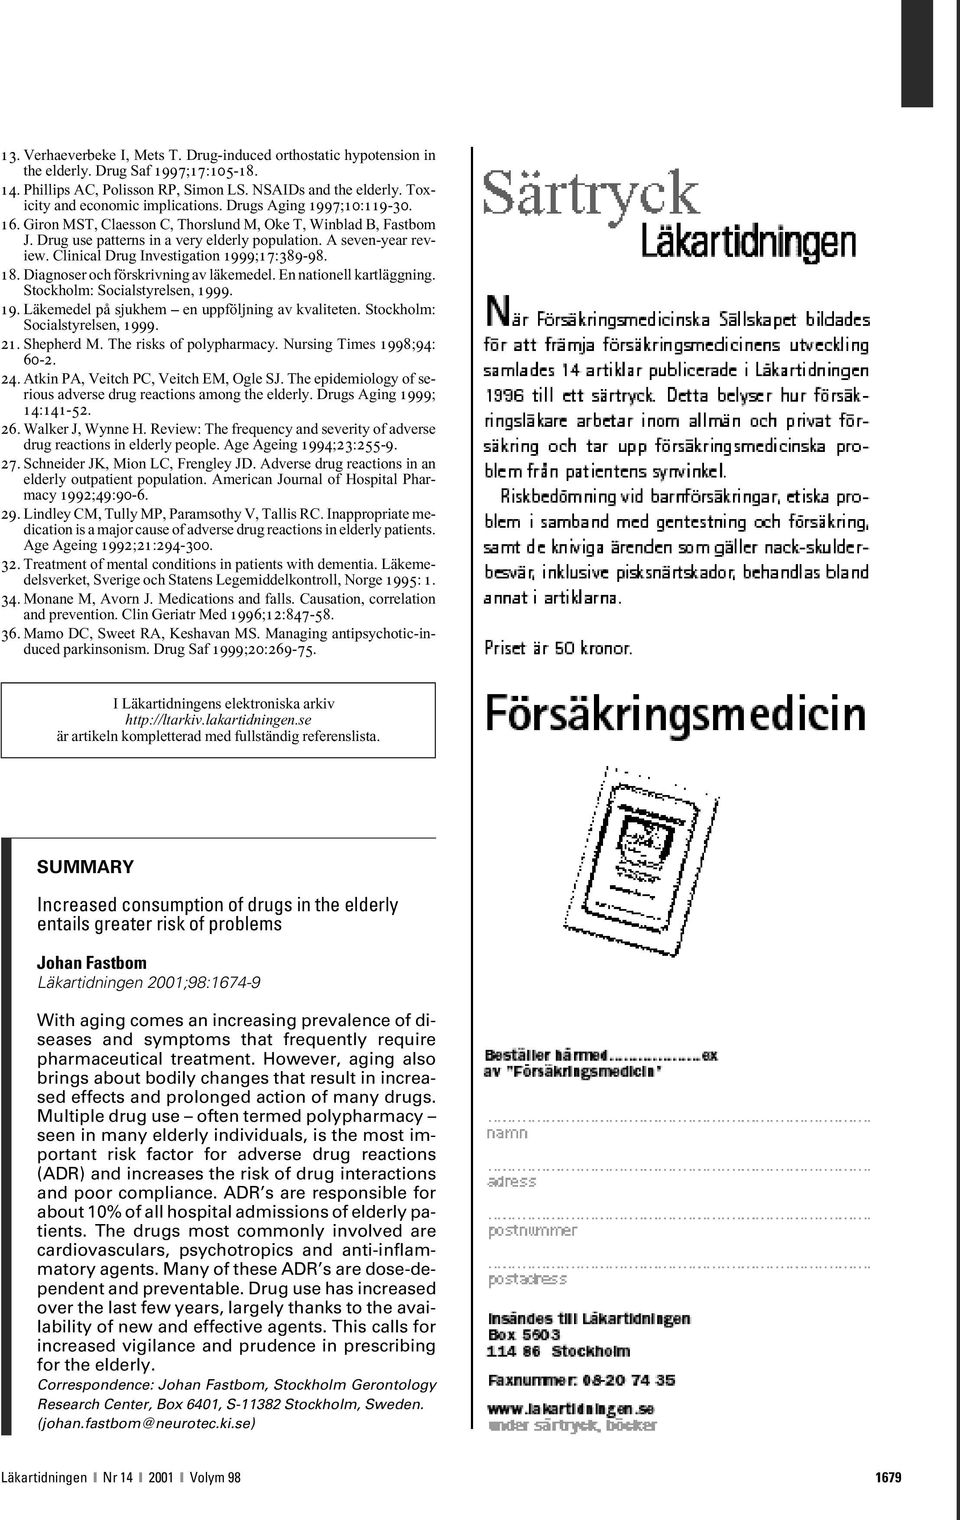 A seven-year review. Clinical Drug Investigation 1999;17:389-98. 18. Diagnoser och förskrivning av läkemedel. En nationell kartläggning. Stockholm: Socialstyrelsen, 1999. 19. Läkemedel på sjukhem en uppföljning av kvaliteten.